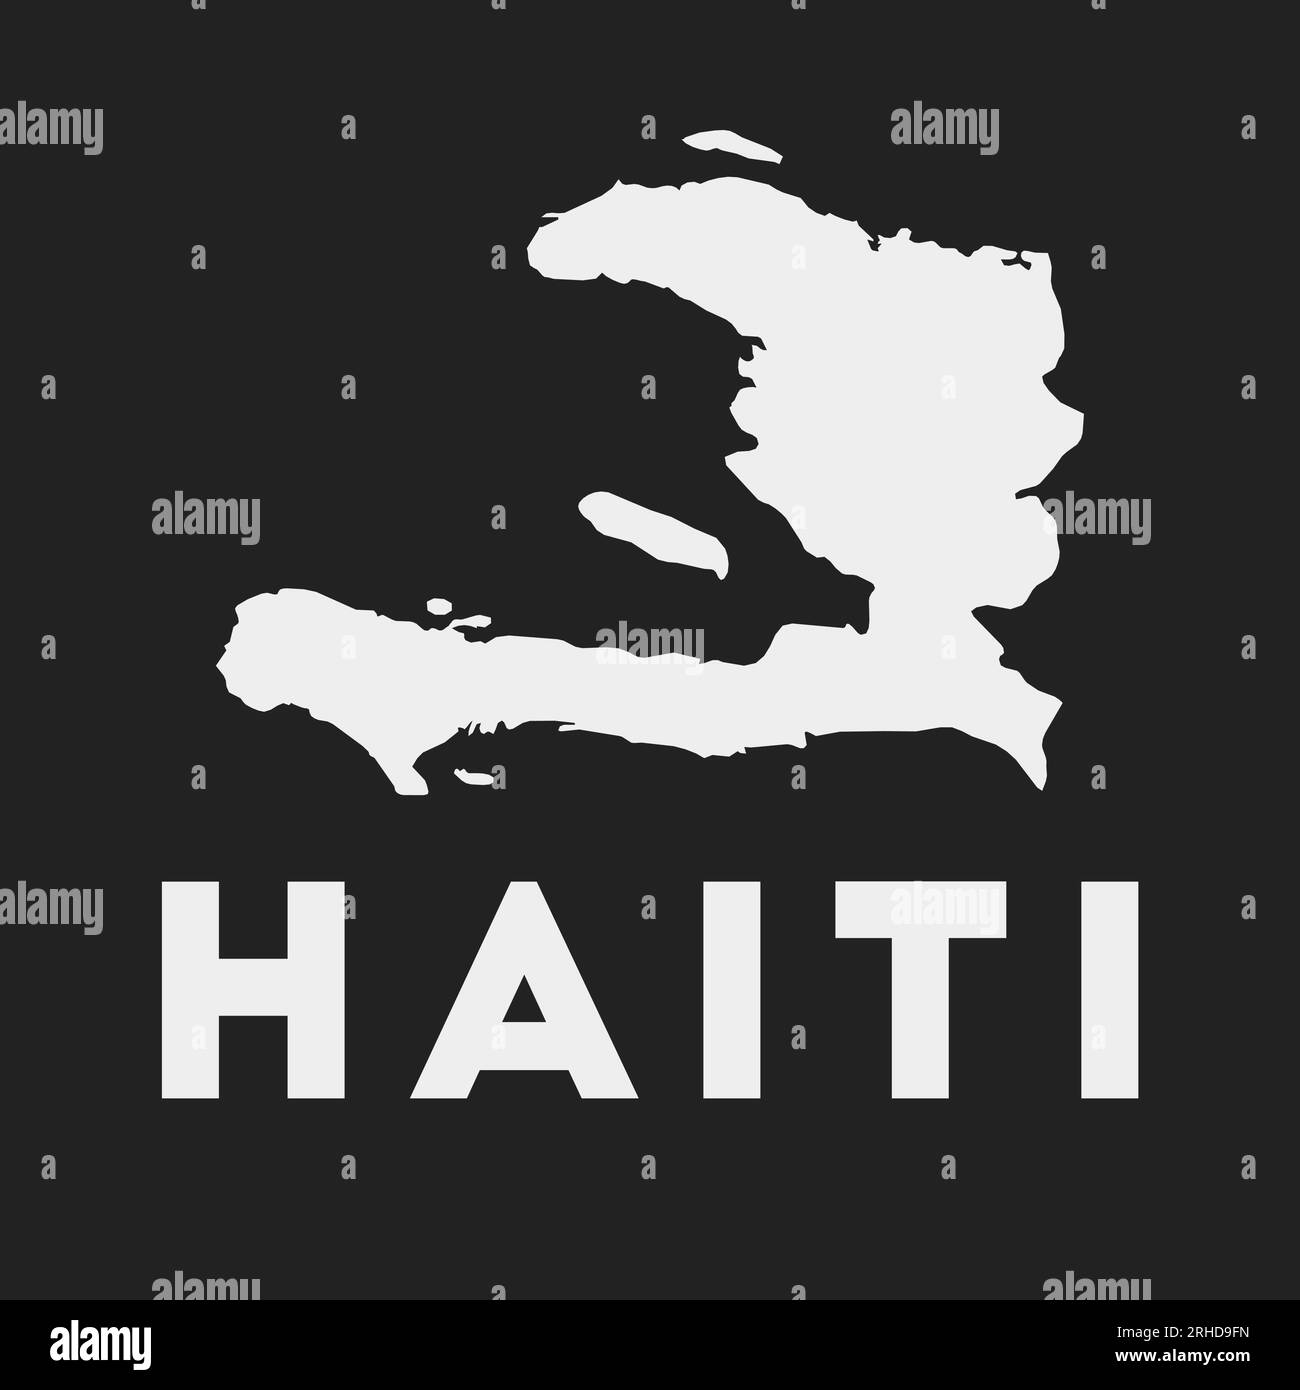 Icône Haïti. Carte du pays sur fond sombre. Carte élégante d'Haïti avec le nom du pays. Illustration vectorielle. Illustration de Vecteur